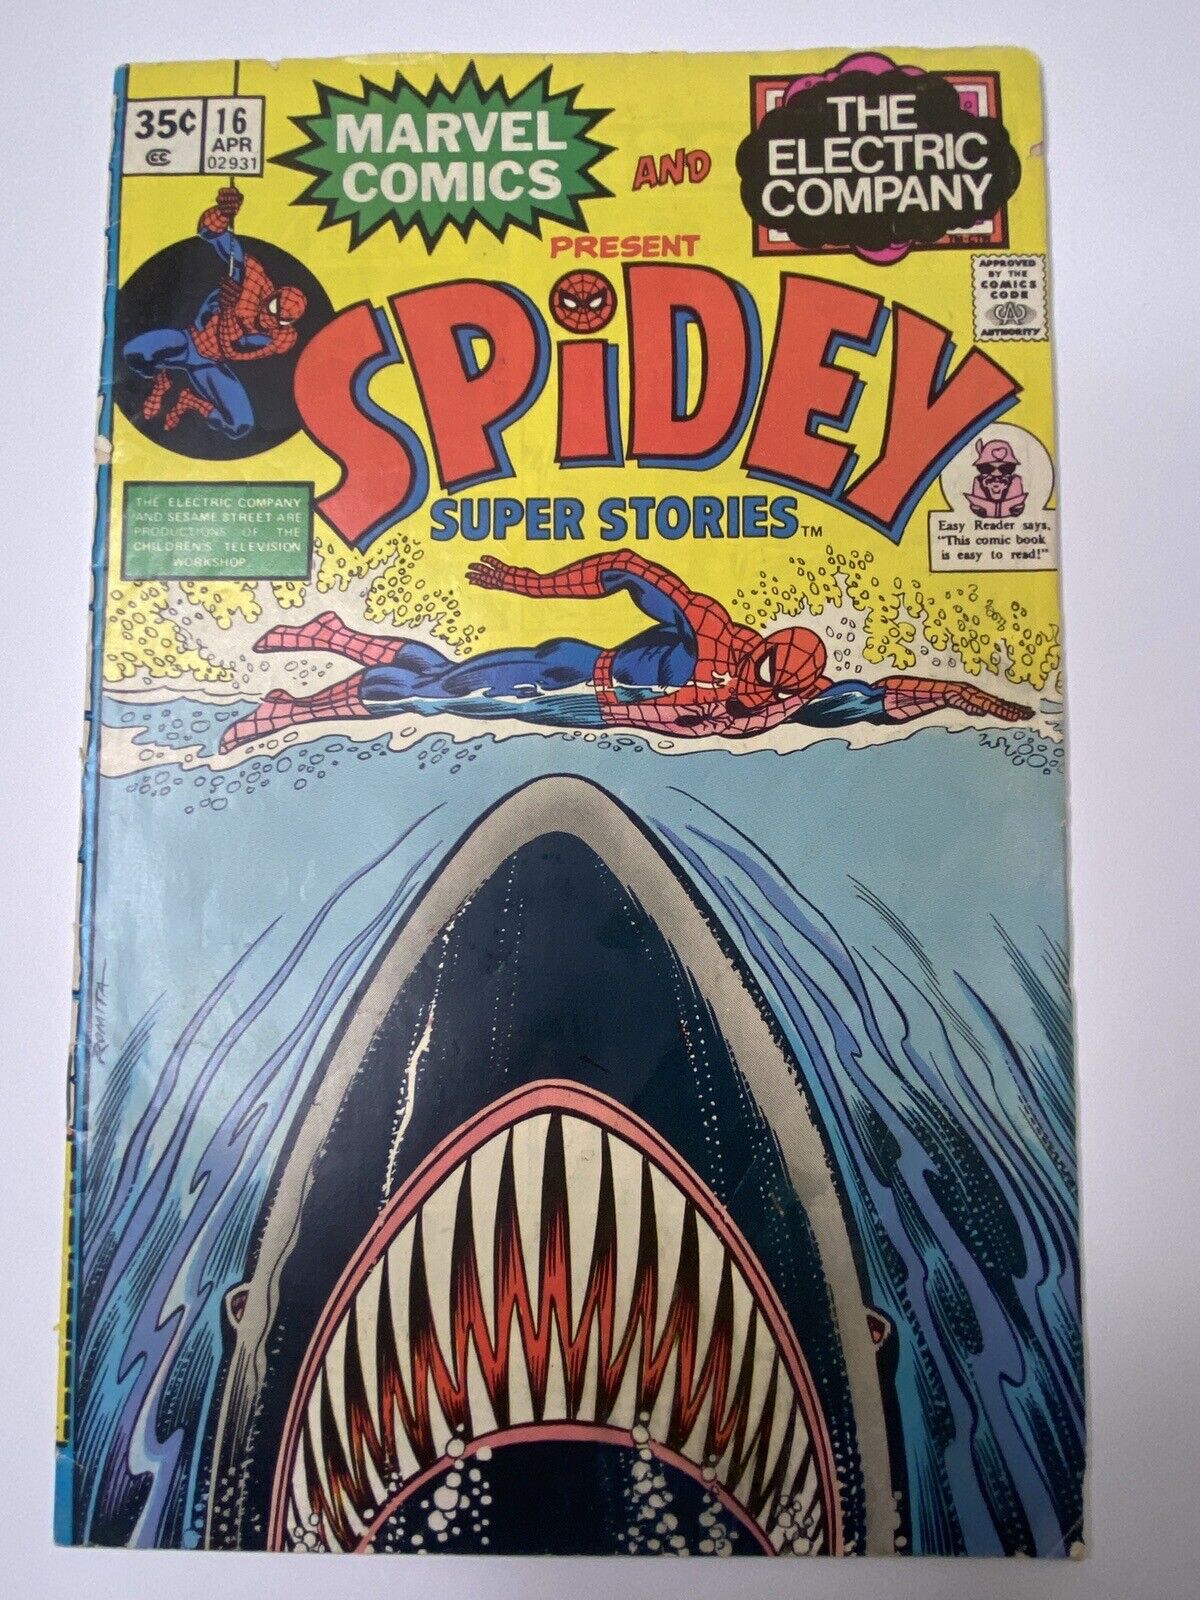 Spidey Super Stories: Issue #16 (1976)